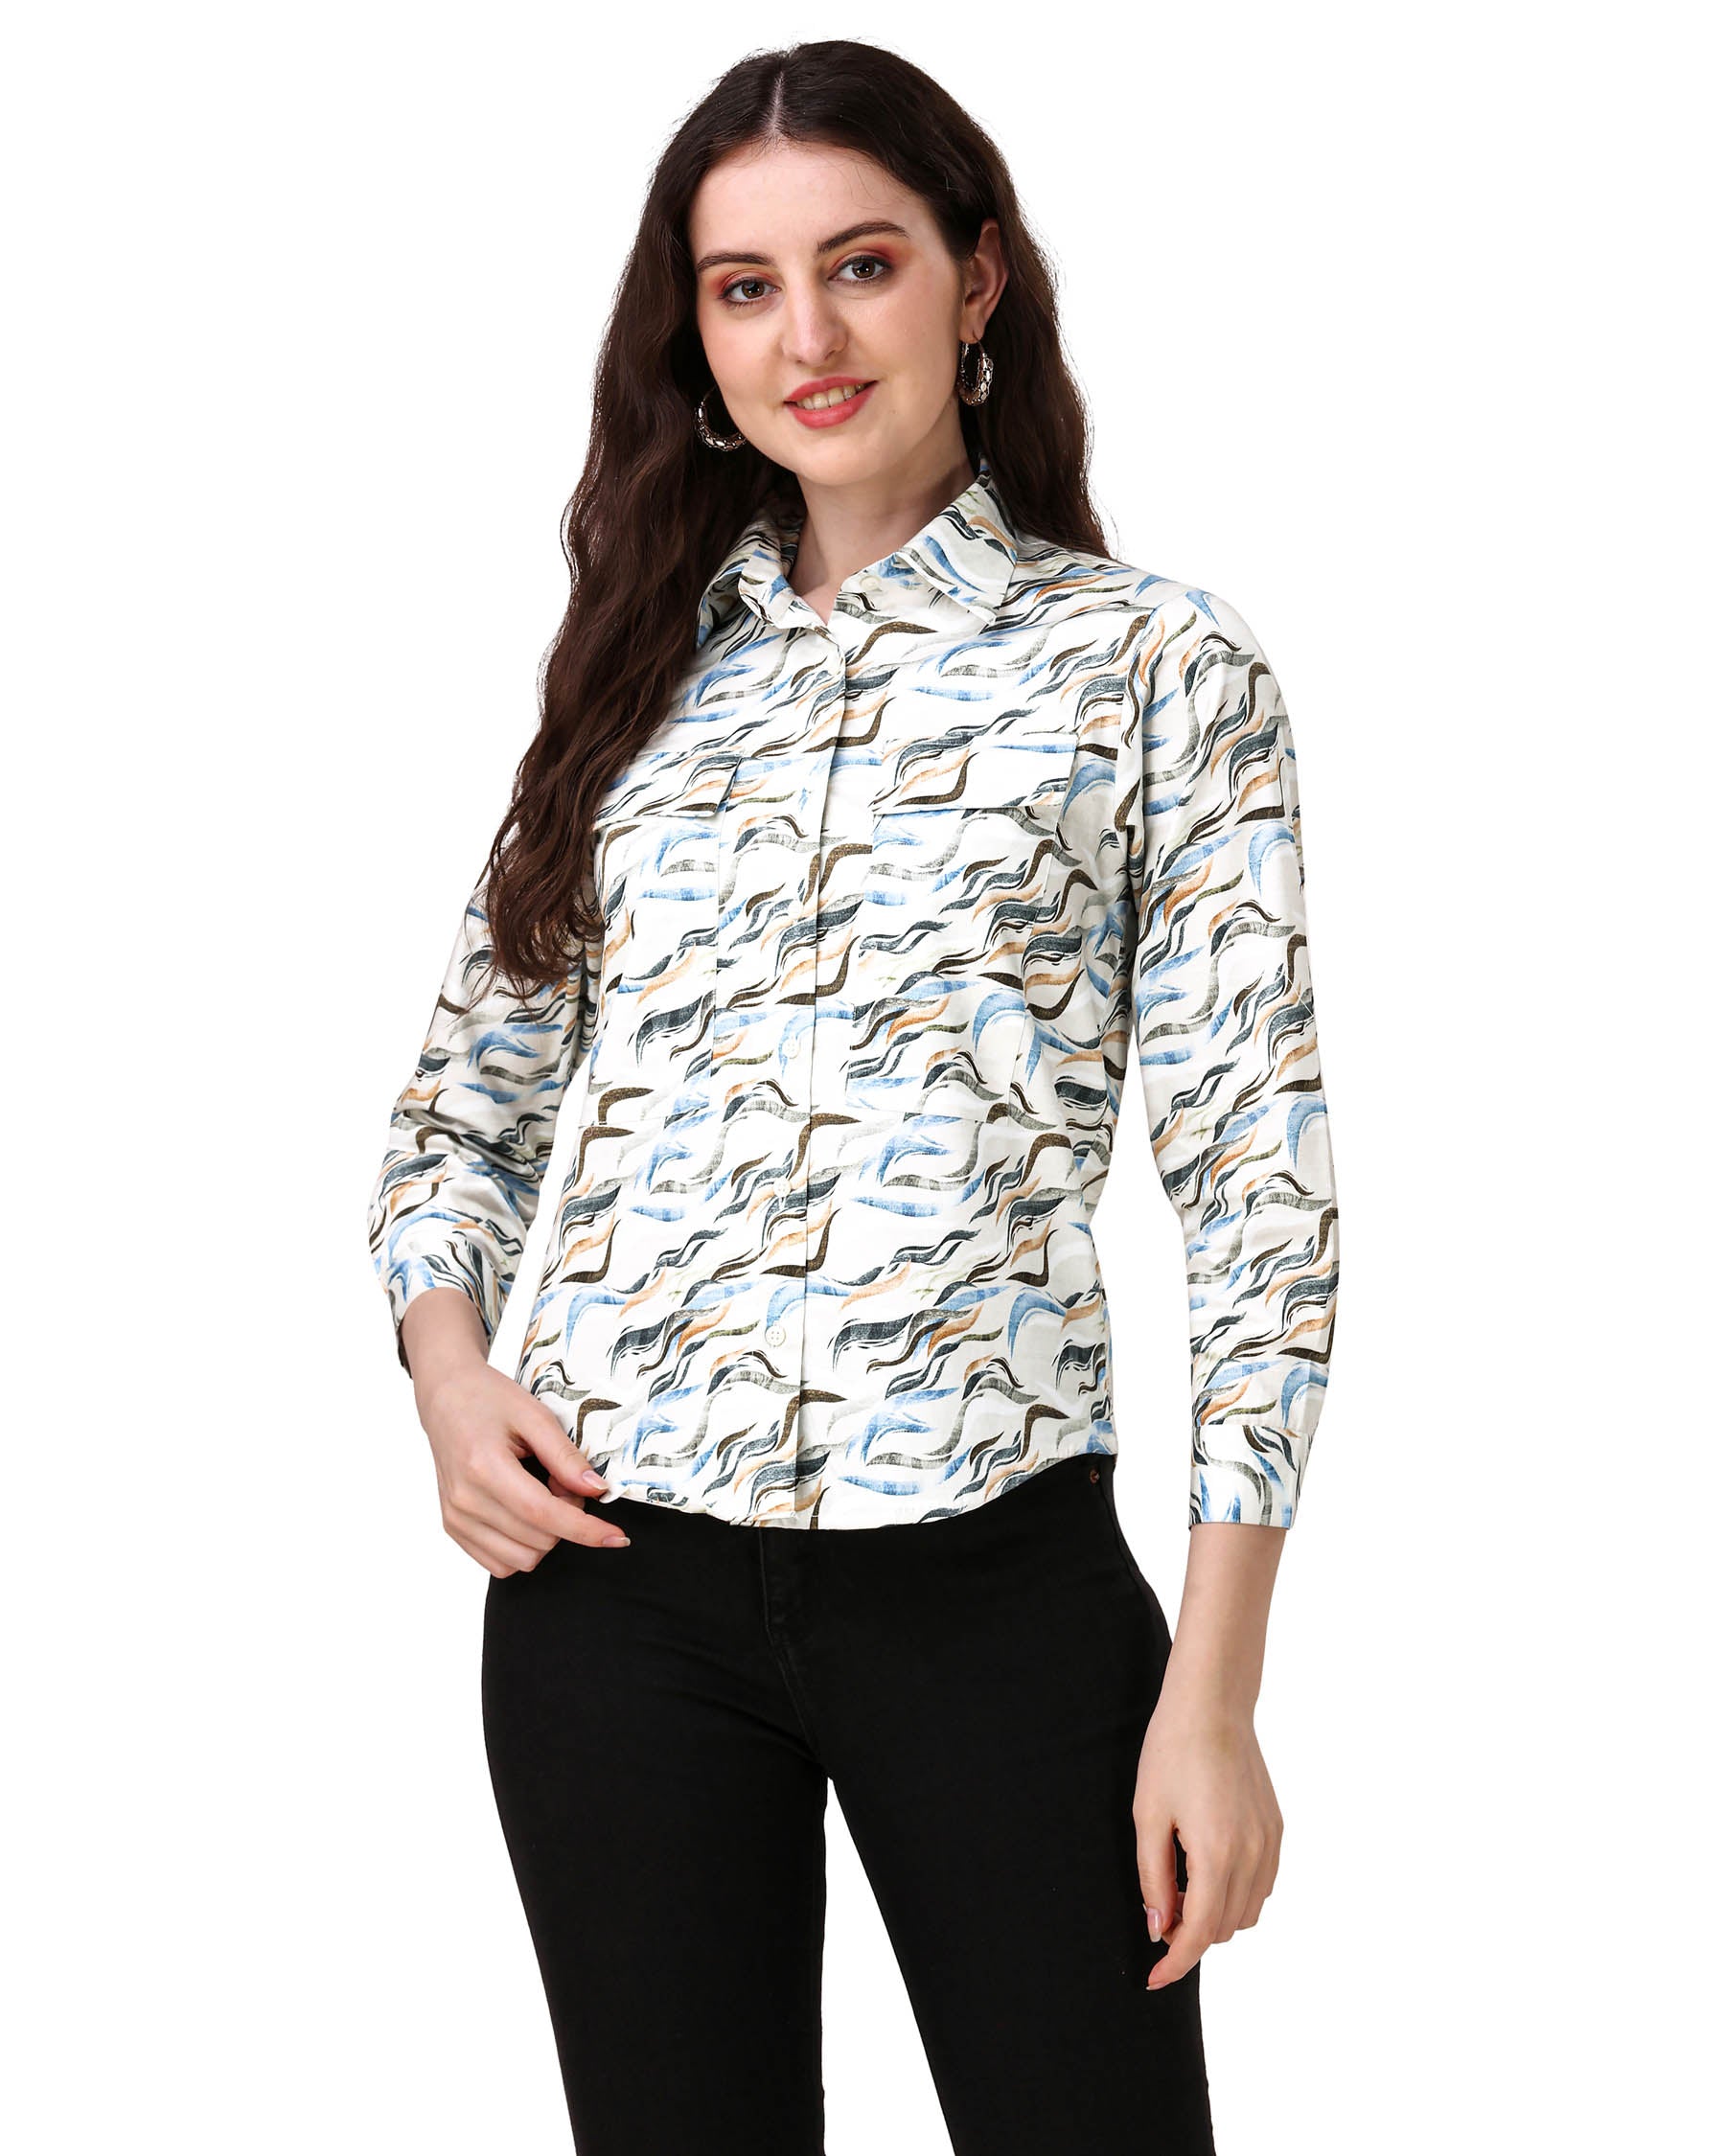 Platinum Cream With Multicolour Printed Super Soft Premium Cotton Women’s Shirt